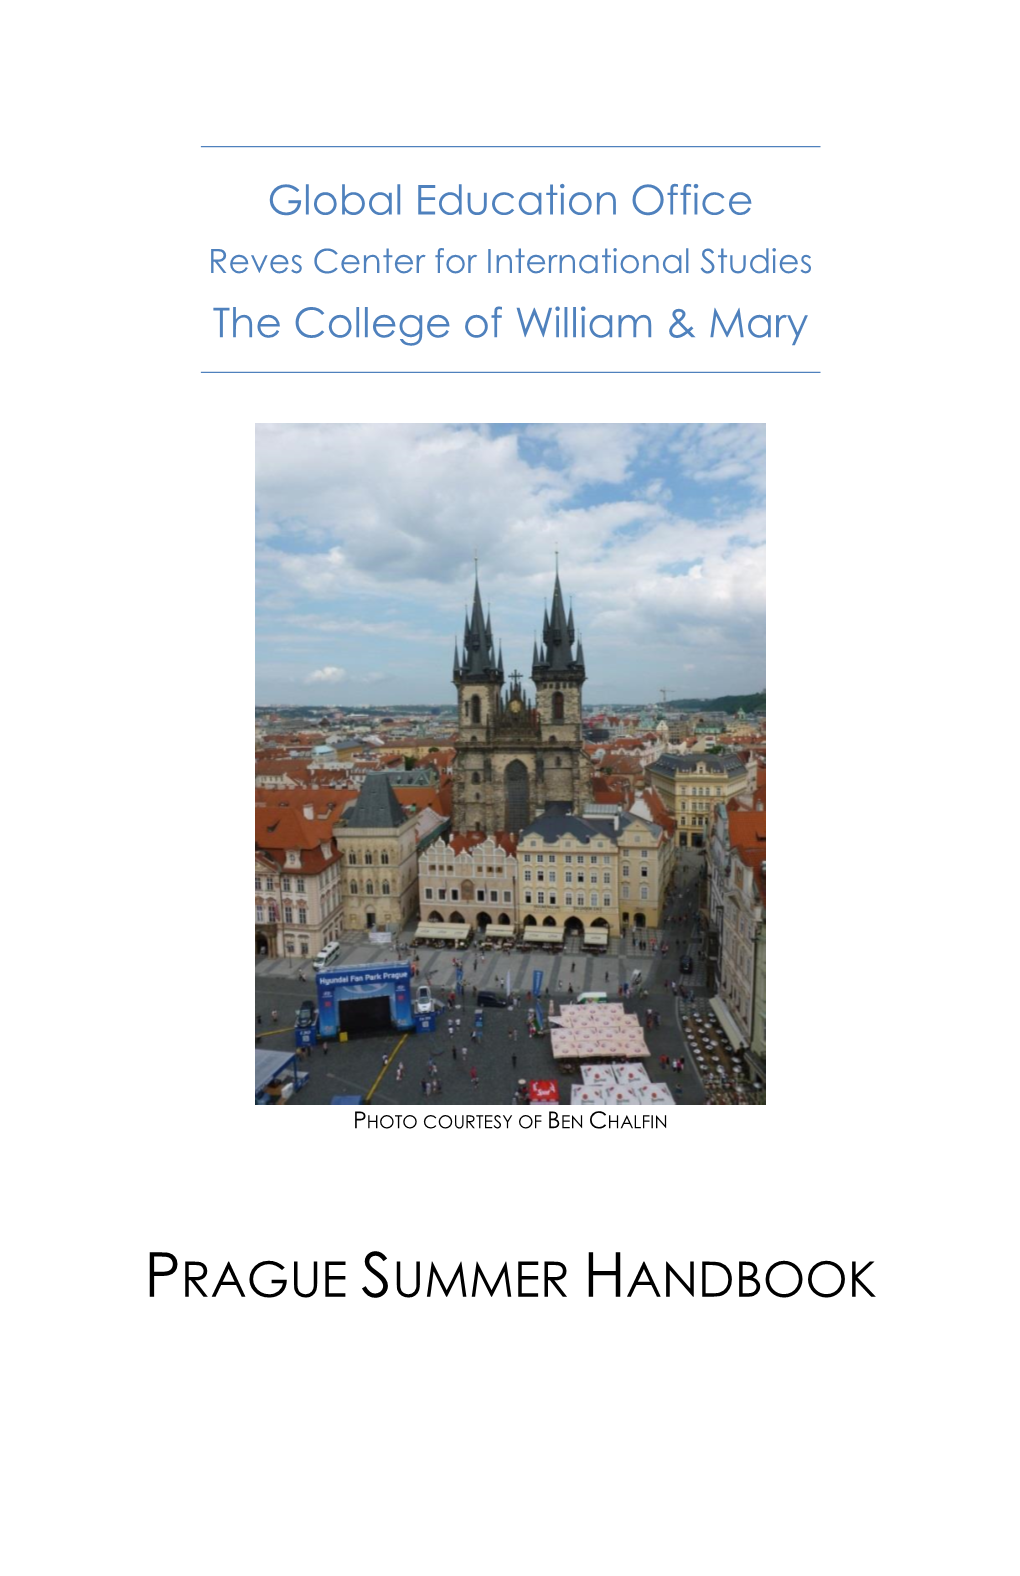 Prague Summer Handbook